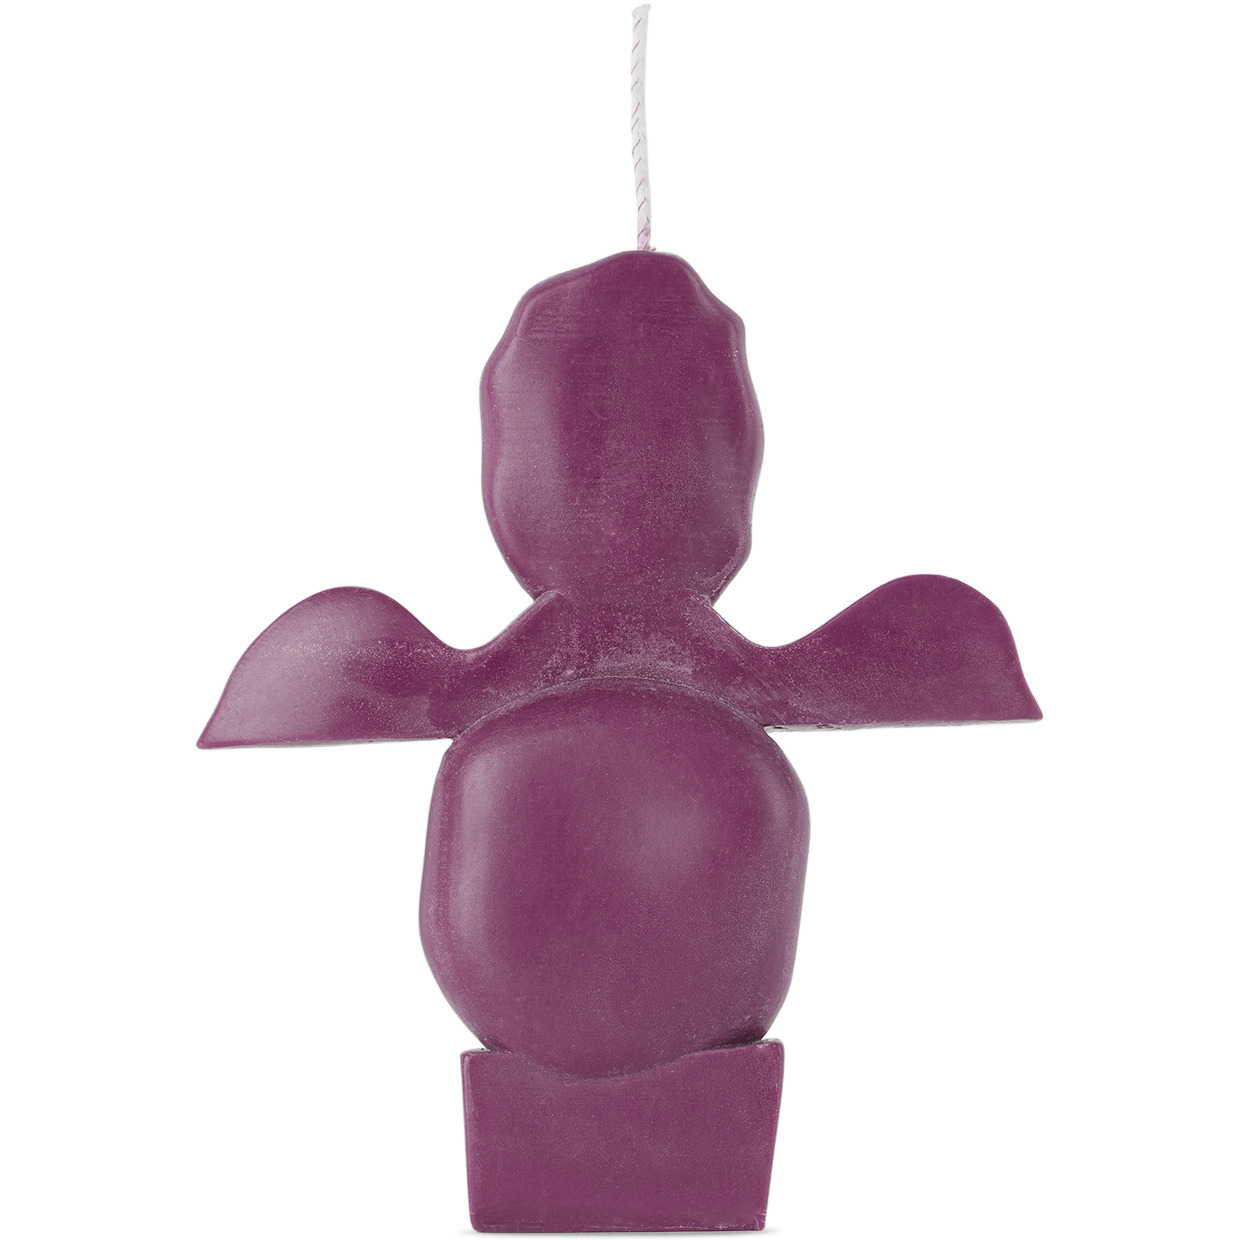 Proba Home Purple Form Shape 03 Candle - image 1